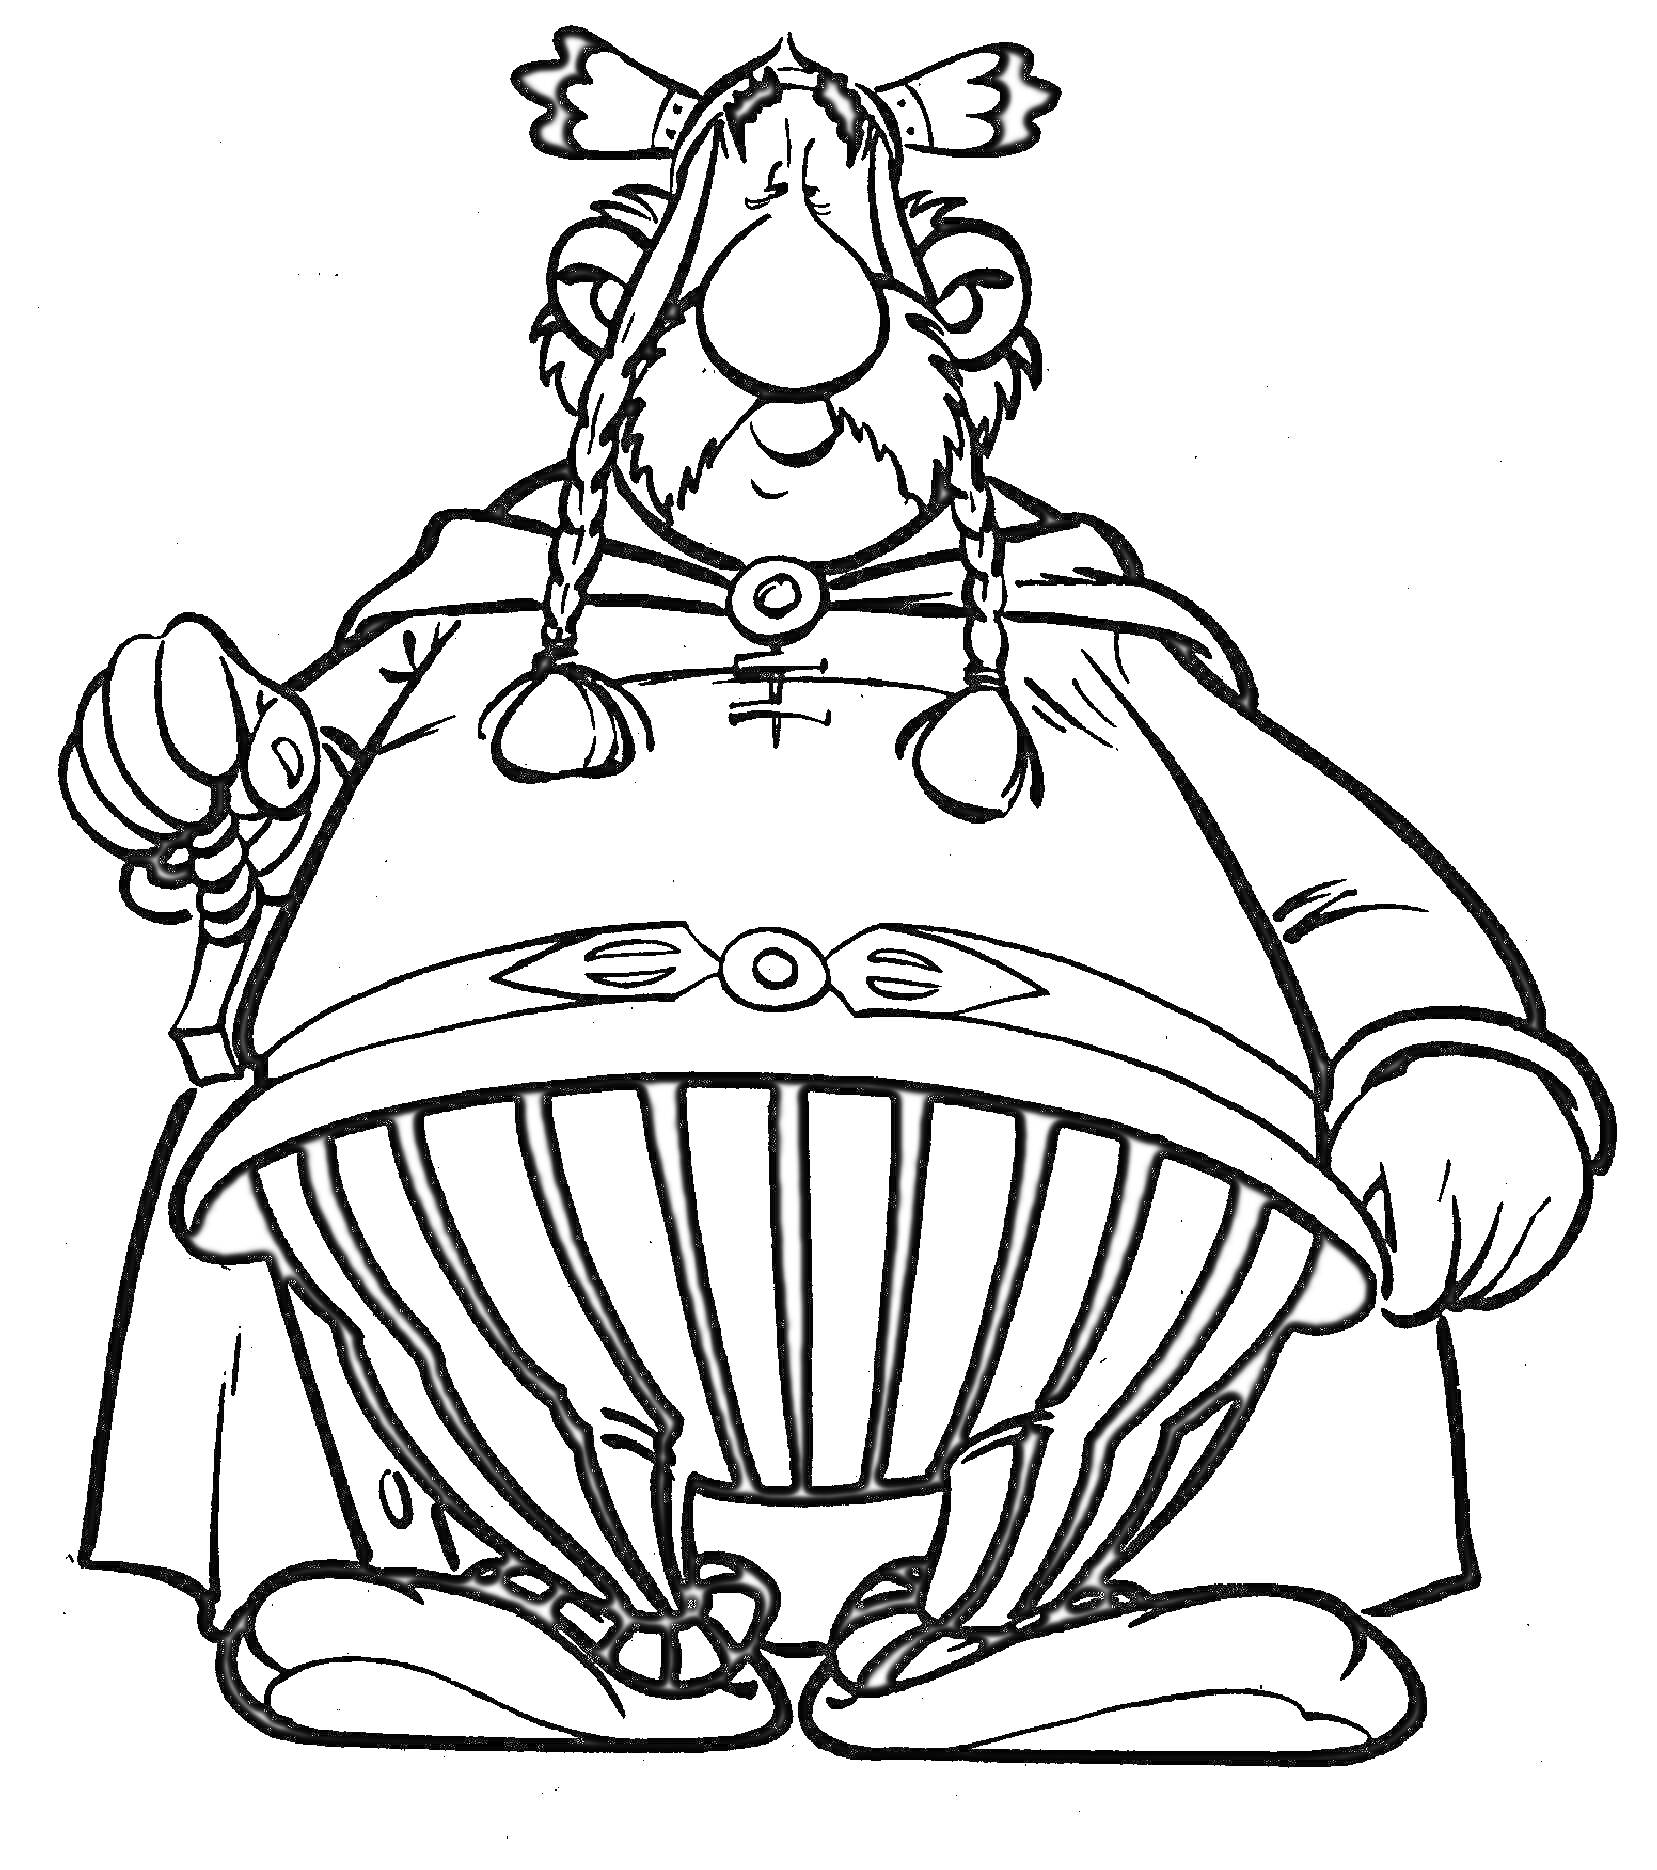 Раскраска Обеликс в полосатых штанах с поднятой правой рукой и висящими косичками